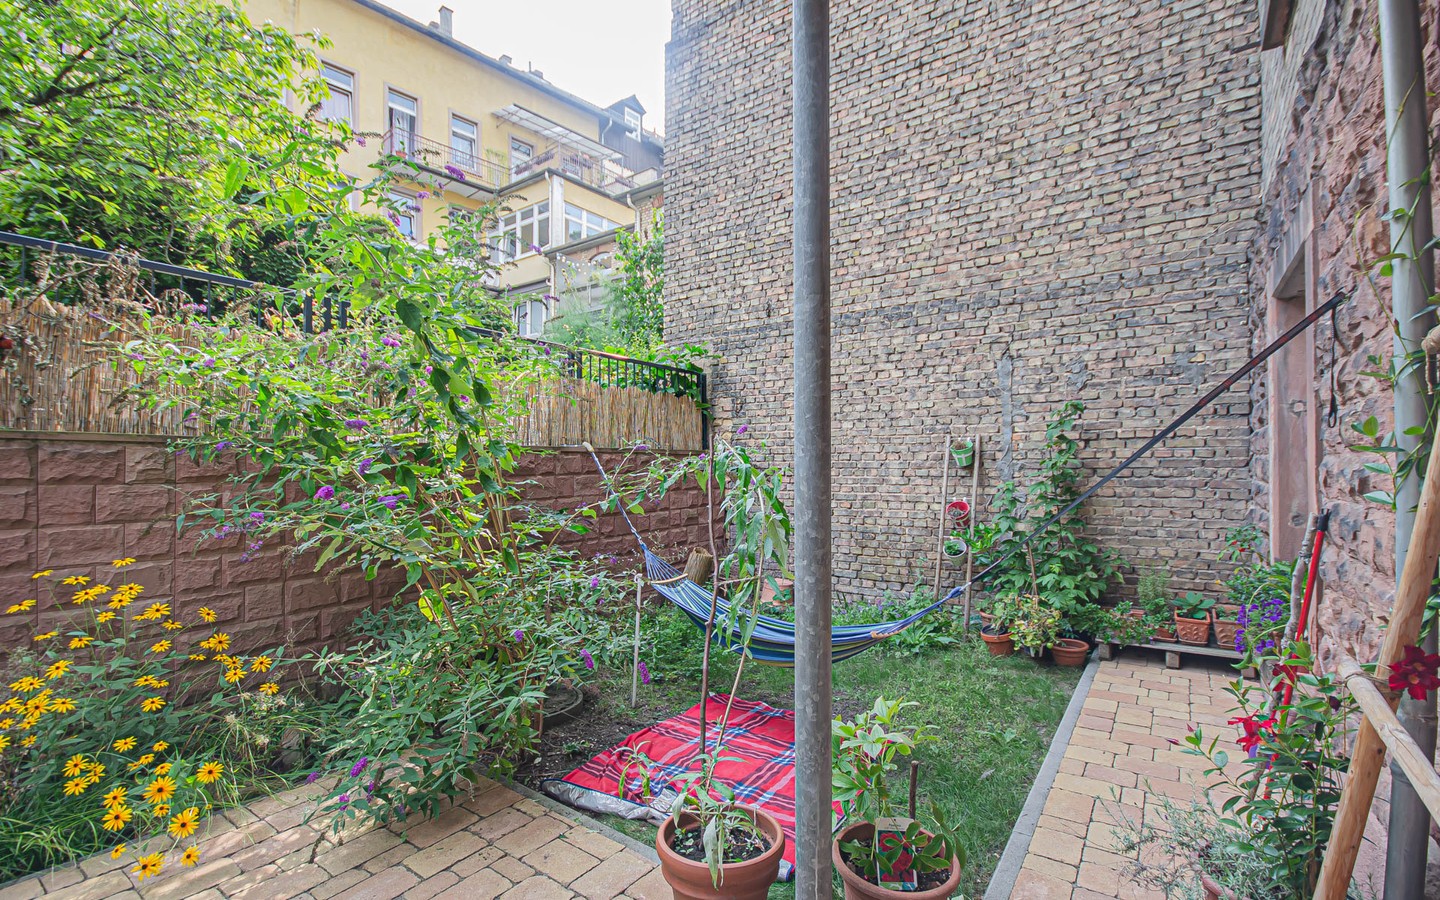 Terrasse - Mittendrin und dennoch ruhig:
Sanierte Altbauwohnung mit Gartenanteil